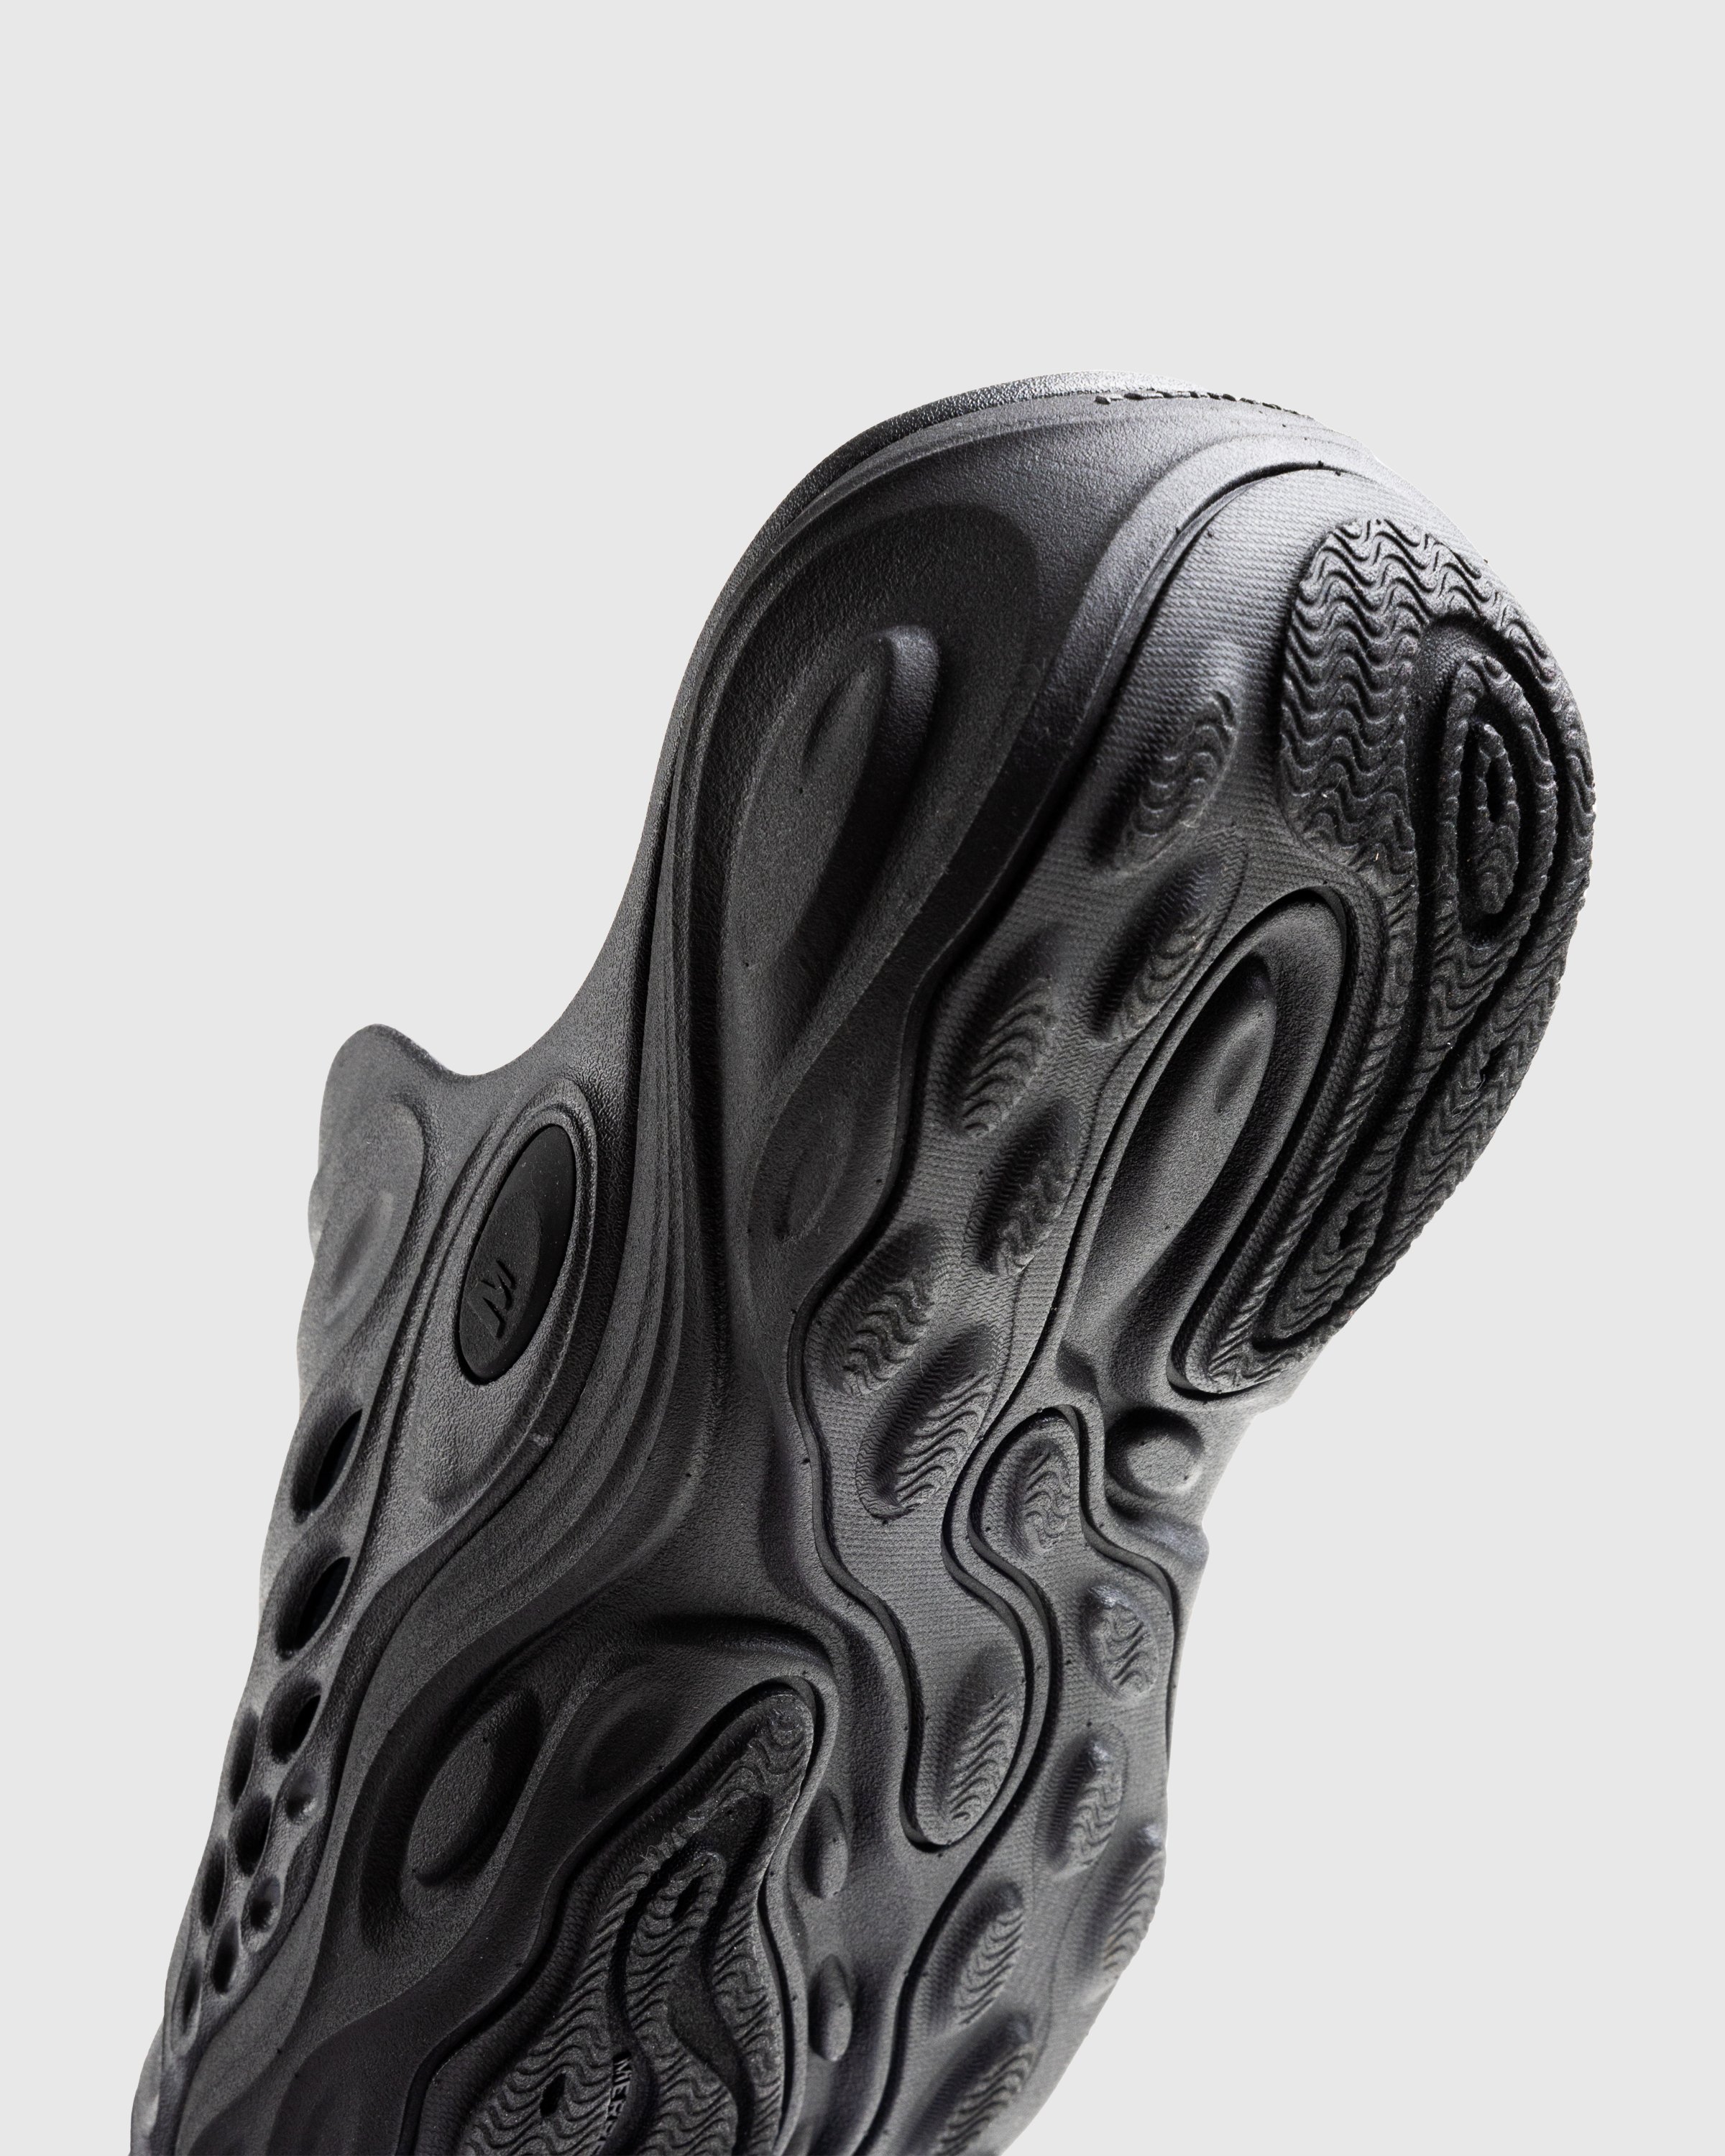 Merrell - HYDRO NEXT GEN MULE SE/TRIPLE BLACK - Footwear - Black - Image 6